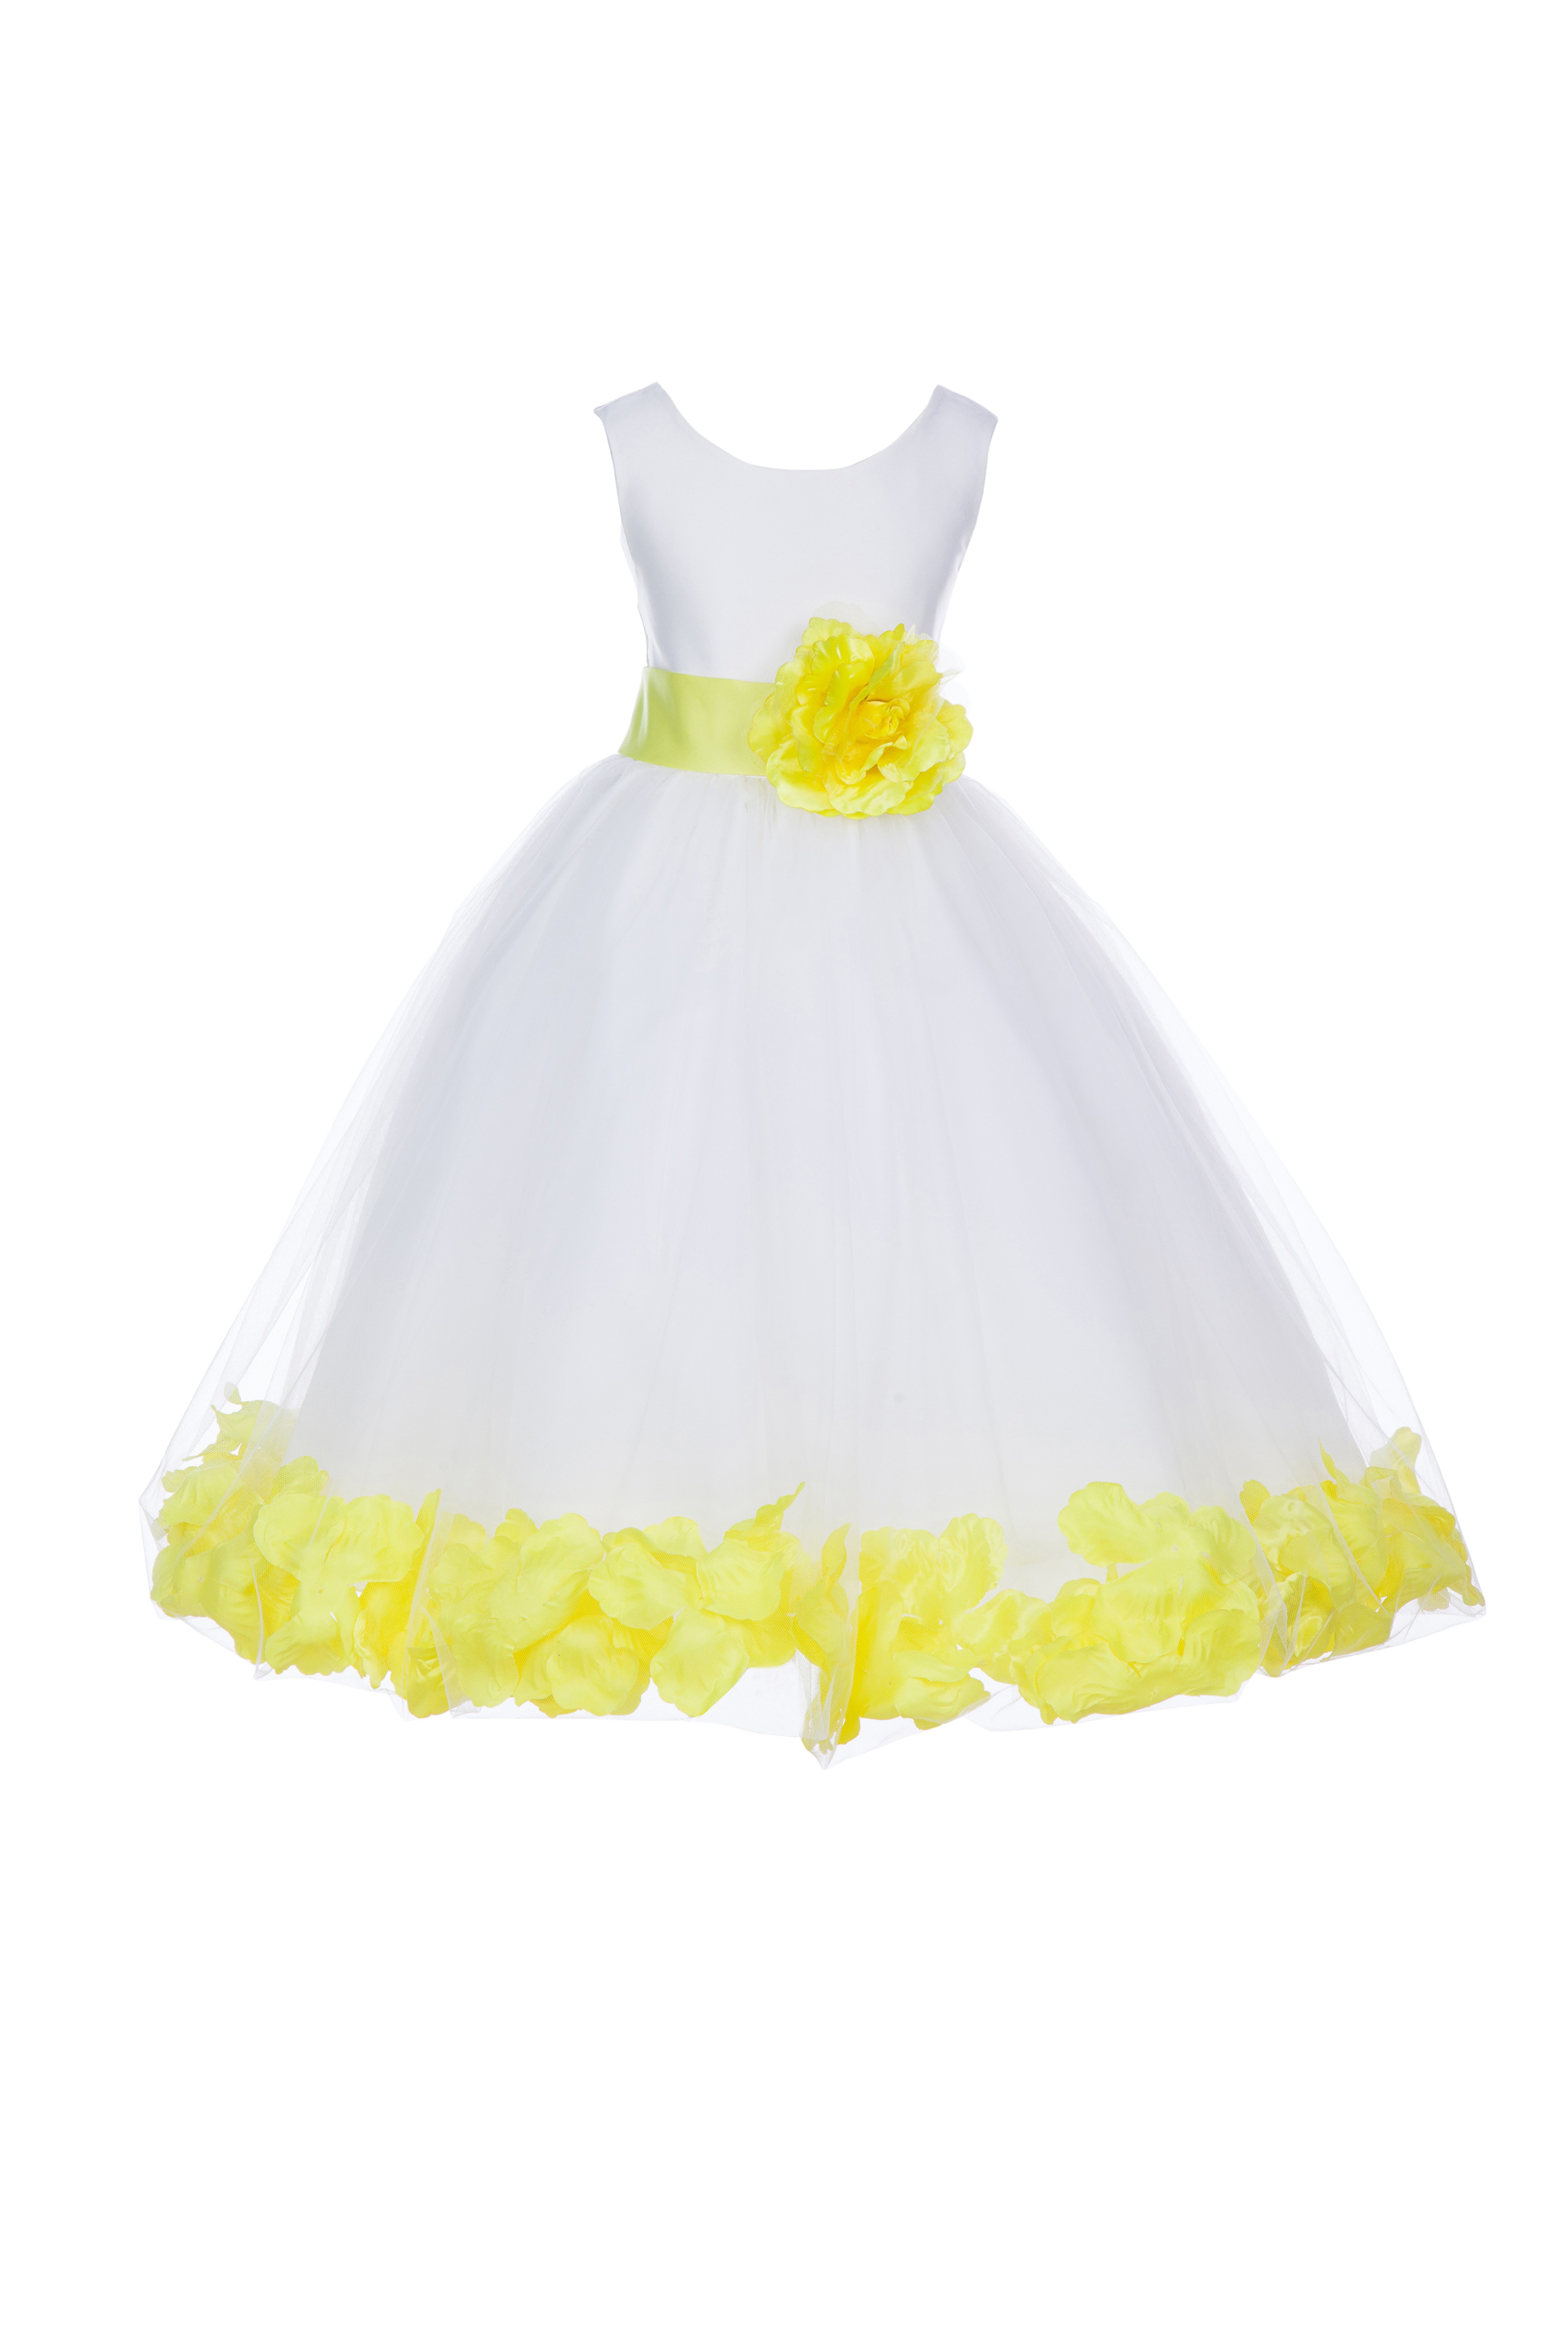 Ivory/Lemon Tulle Rose Petals Flower Girl Dress Pageant 302S